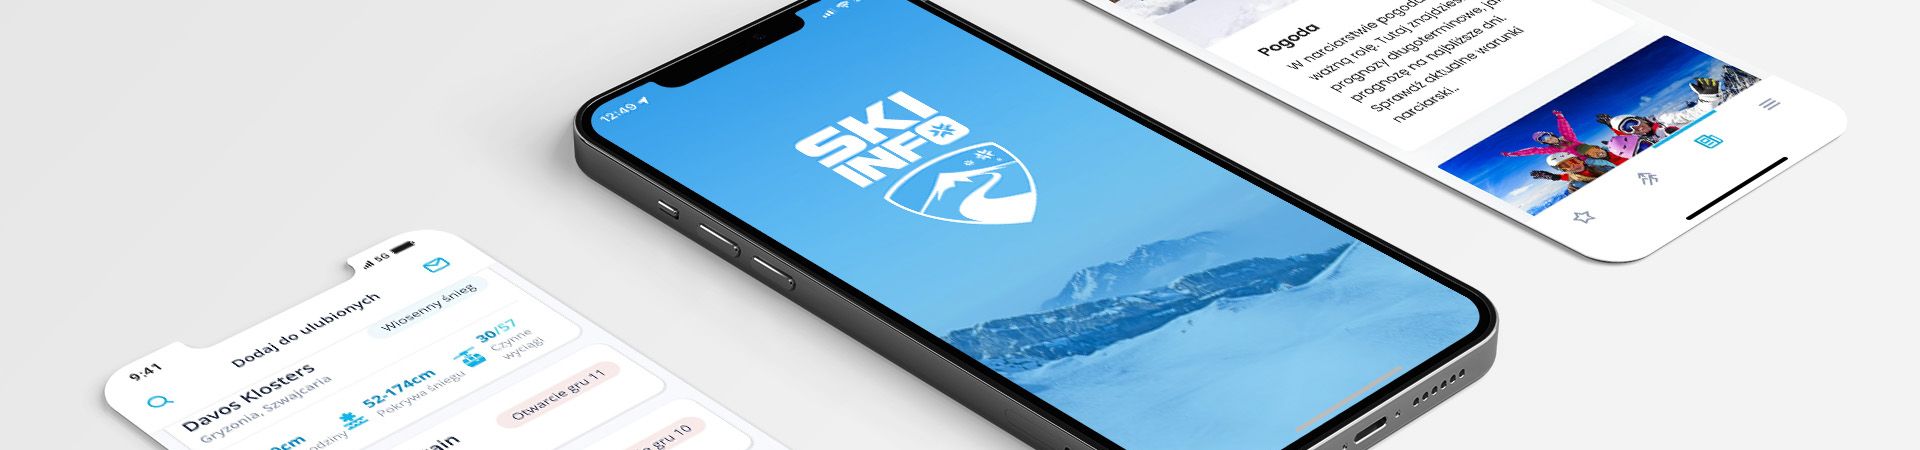 aplikacje narciarskie